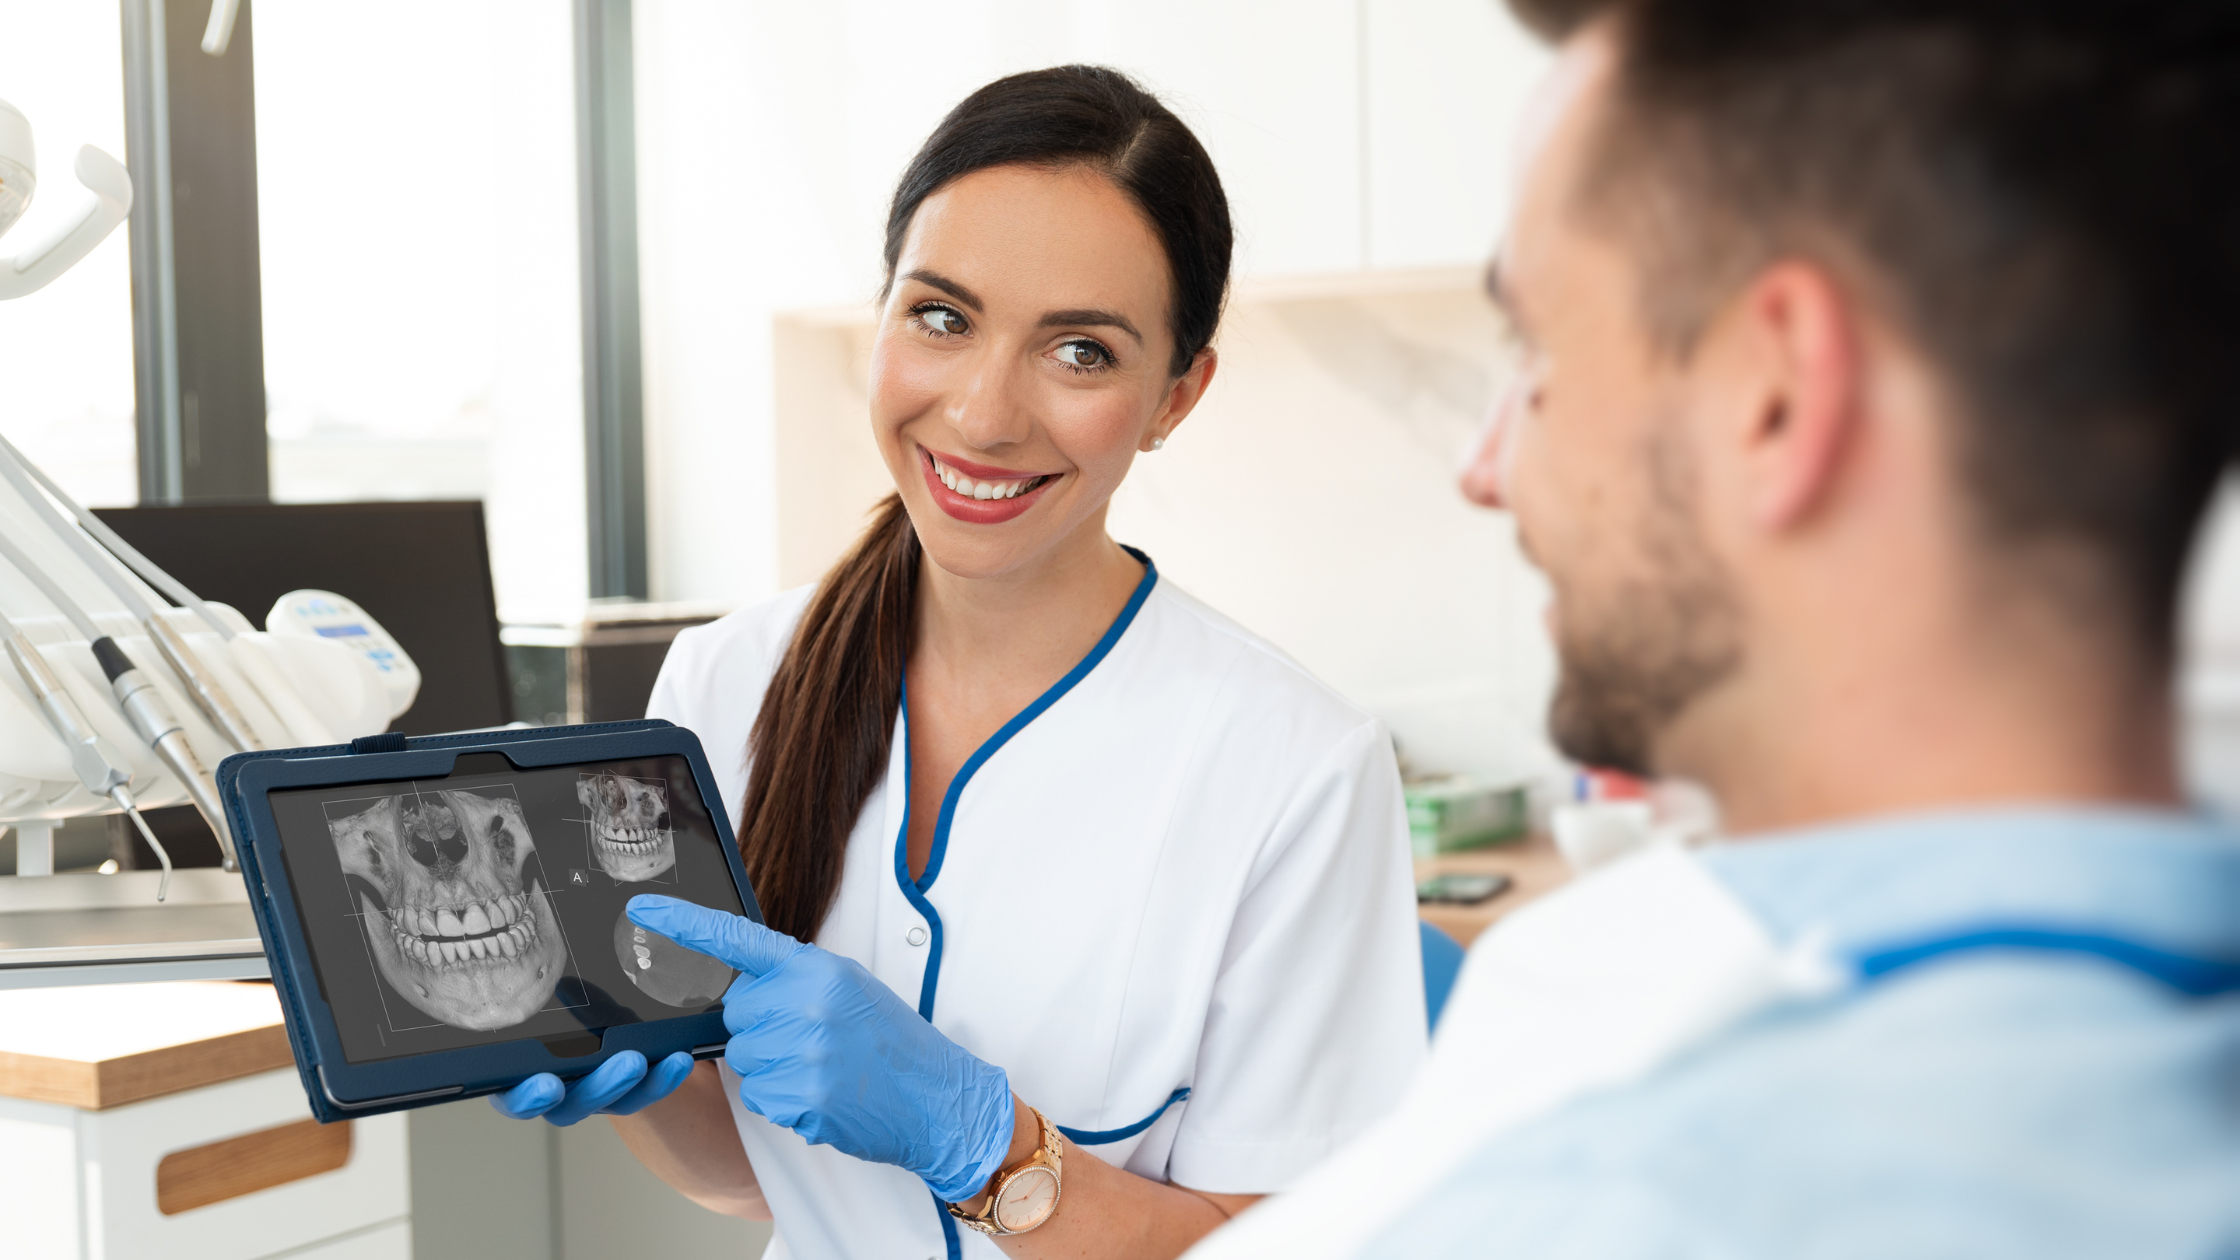 Descubra como a Mira Radiologia em Belo Horizonte eleva o padrão de cuidados odontológicos, oferecendo diagnósticos precisos e tecnologia de ponta para profissionais de odontologia.